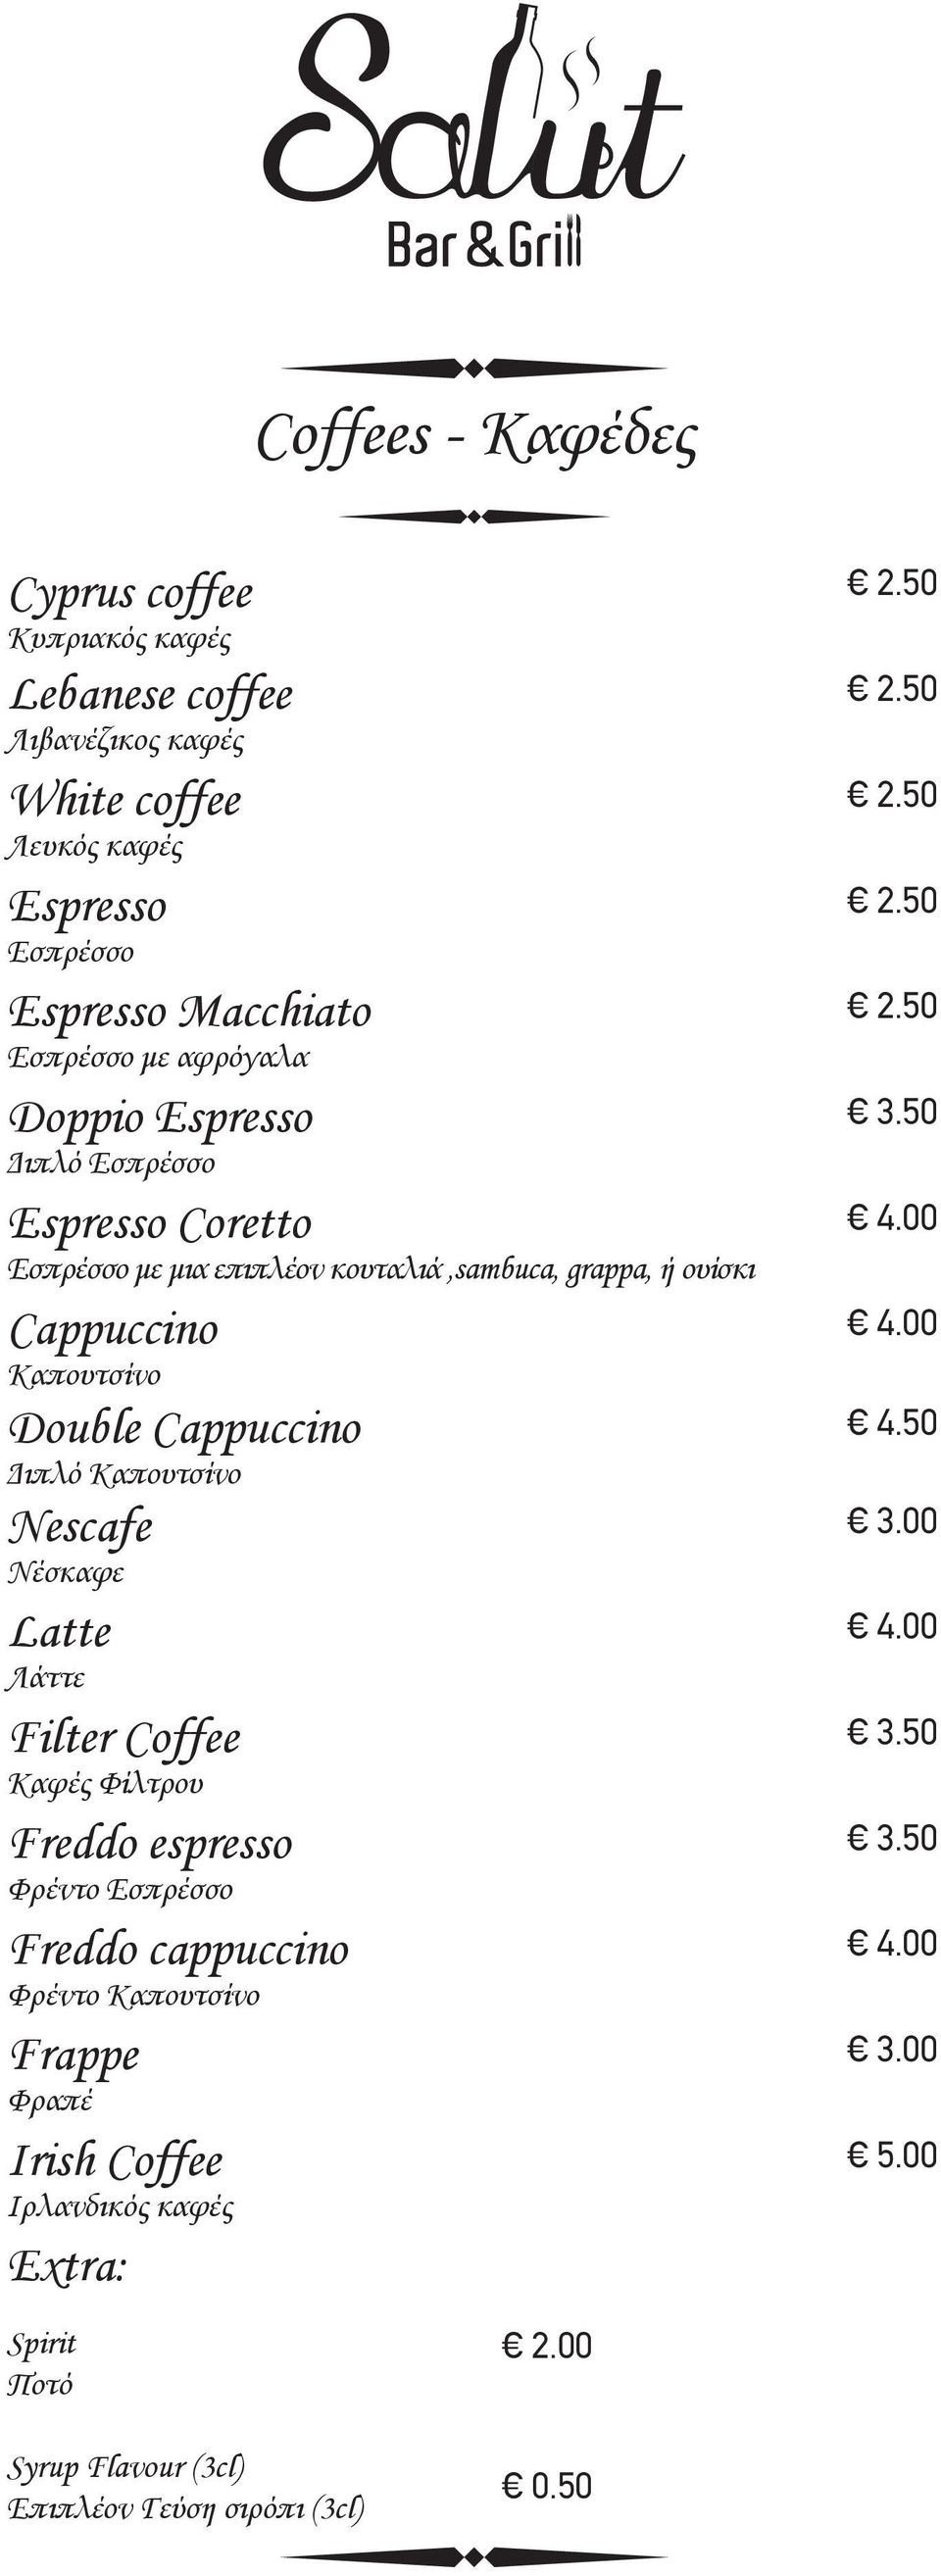 Καπουτσίνο Double Cappuccino Διπλό Καπουτσίνο Nescafe Νέσκαφε Latte Λάττε Filter Coffee Καφές Φίλτρου Freddo espresso Φρέντο Εσπρέσσο Freddo